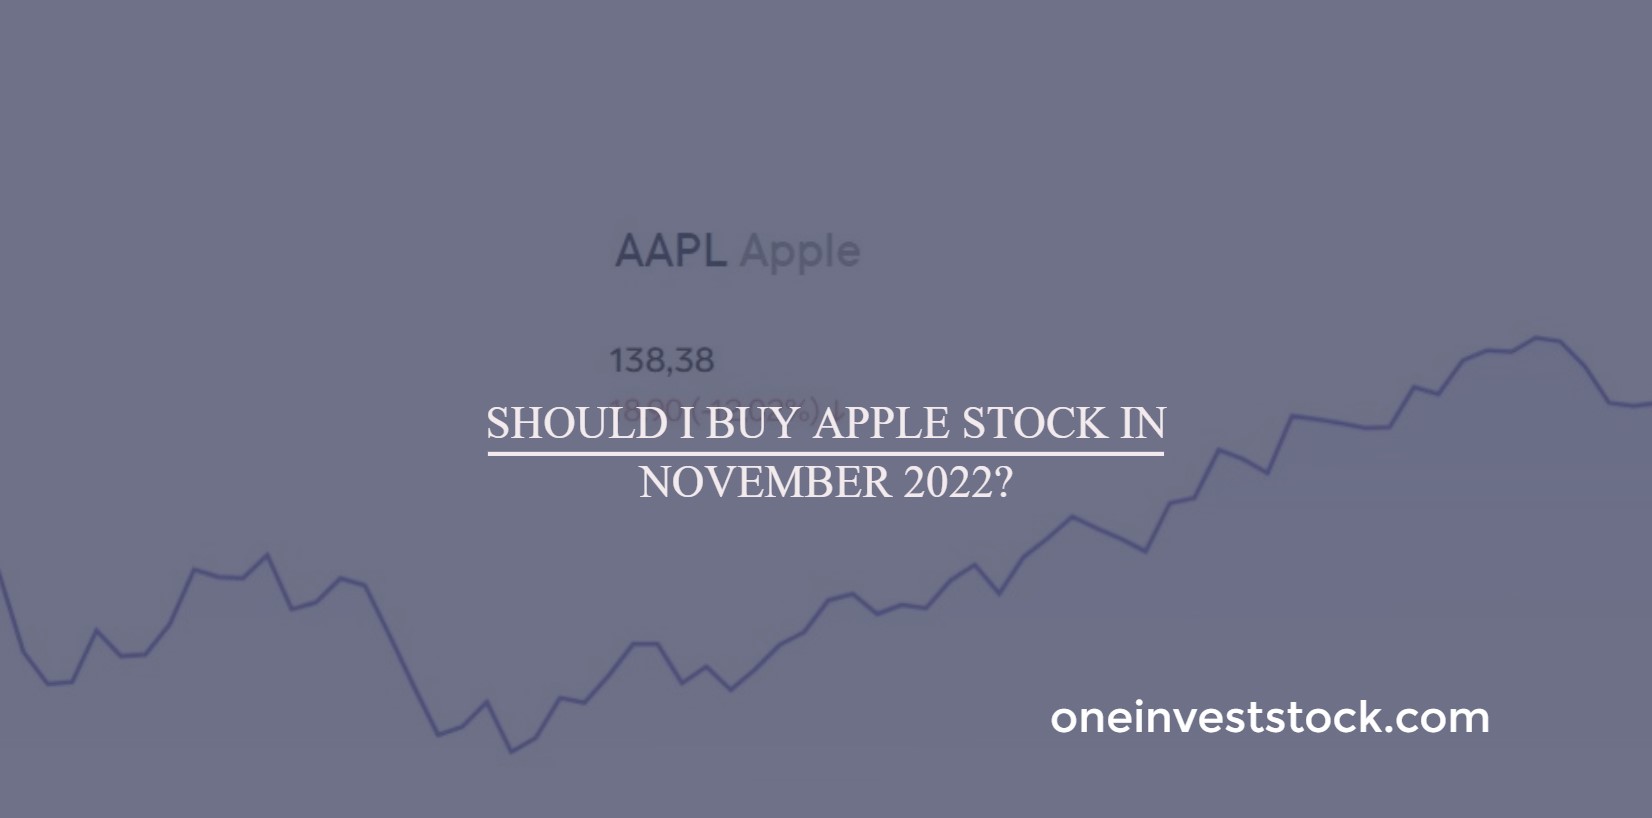 Should I buy Apple stock in November 2022